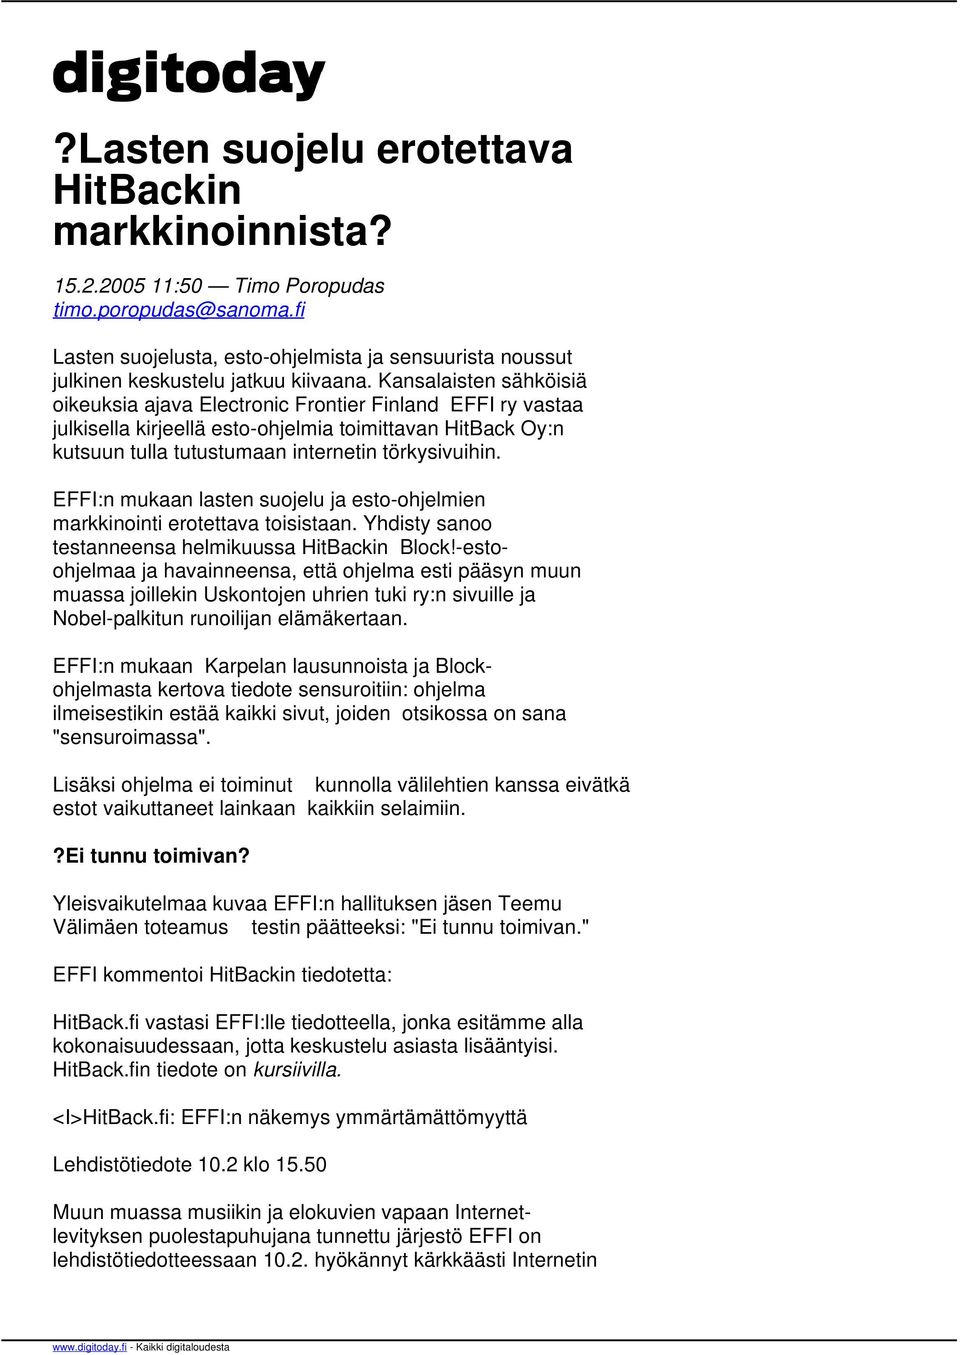 Kansalaisten sähköisiä oikeuksia ajava Electronic Frontier Finland EFFI ry vastaa julkisella kirjeellä esto-ohjelmia toimittavan HitBack Oy:n kutsuun tulla tutustumaan internetin törkysivuihin.